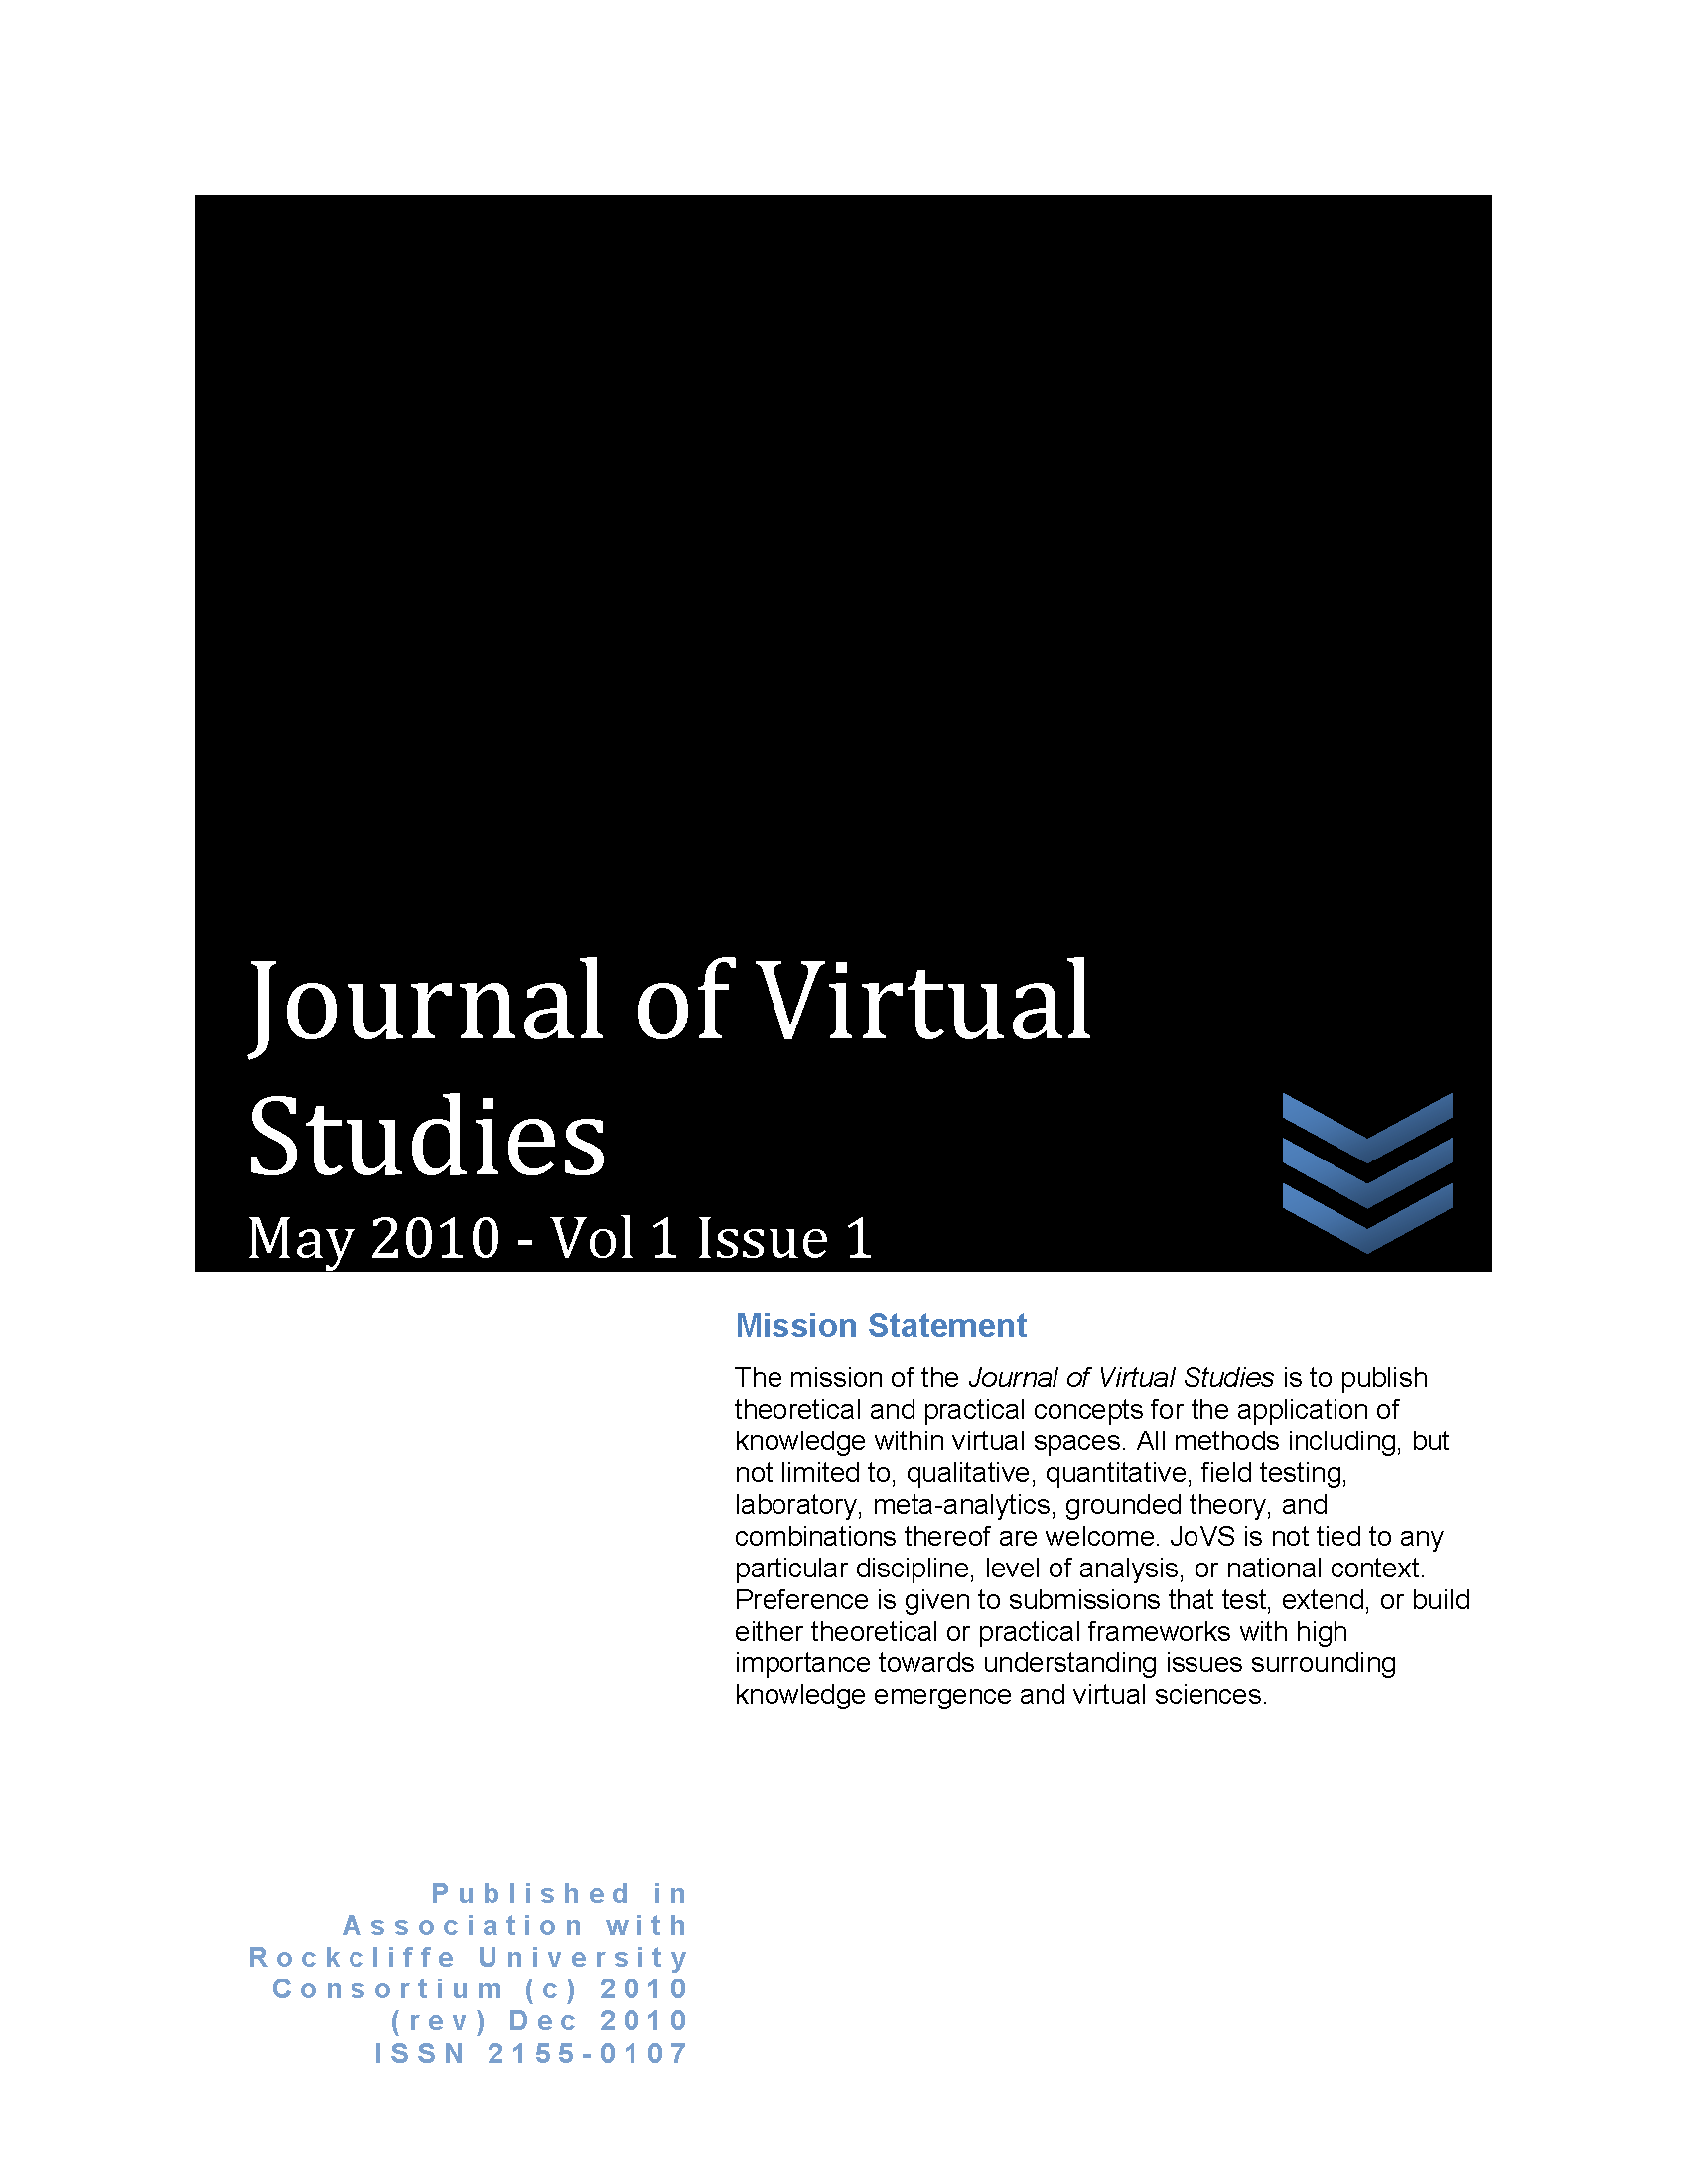 JoVS Volume 1 Issue 1